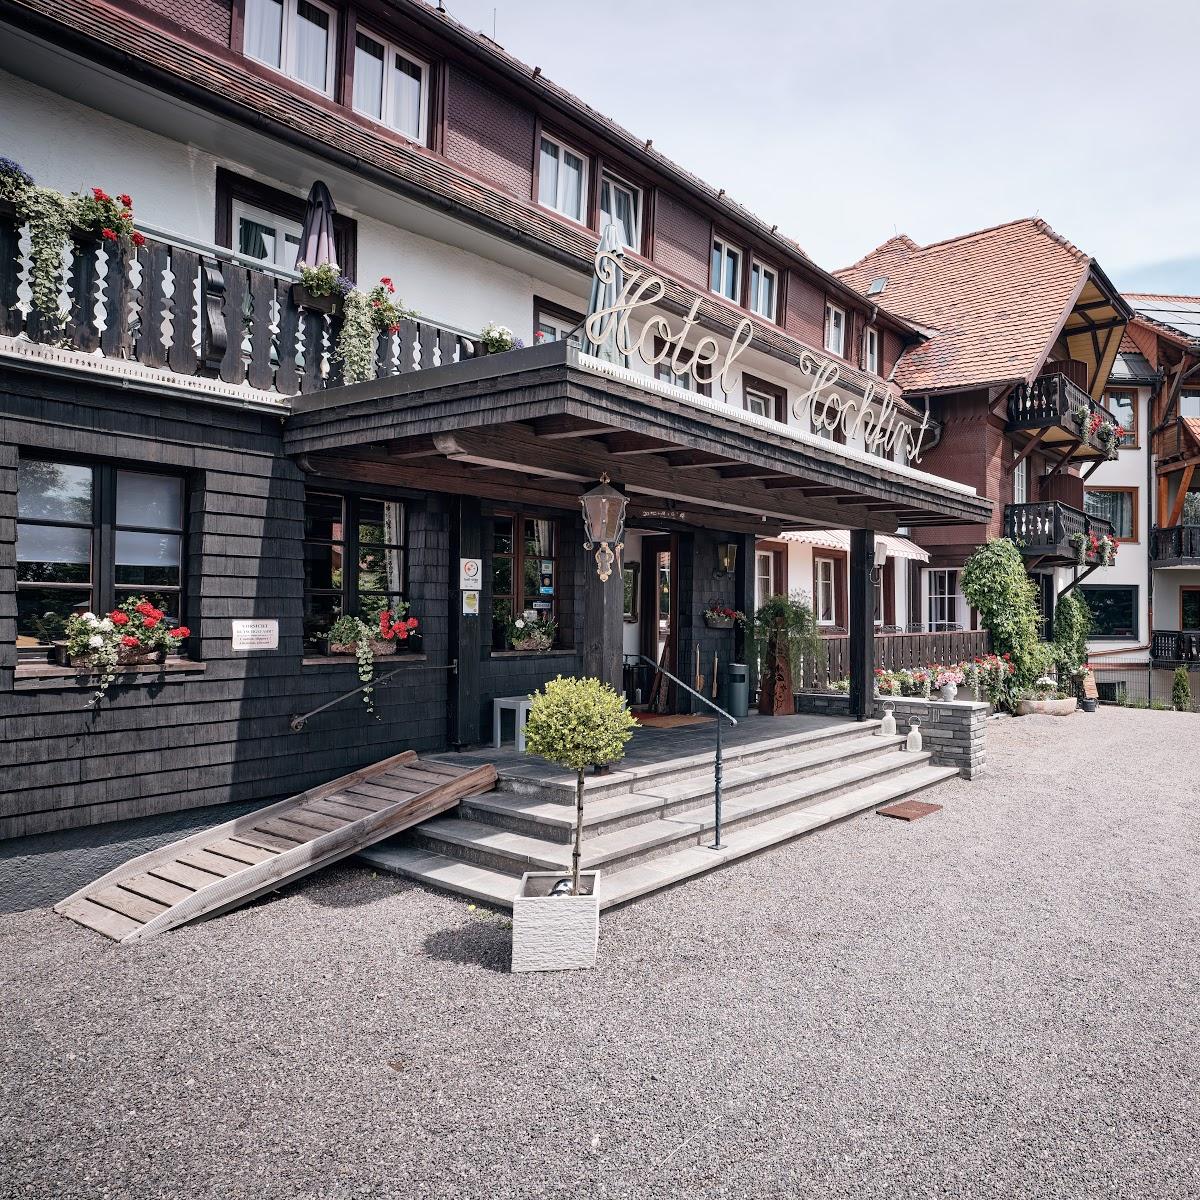 Restaurant "Hotel Hochfirst" in Lenzkirch